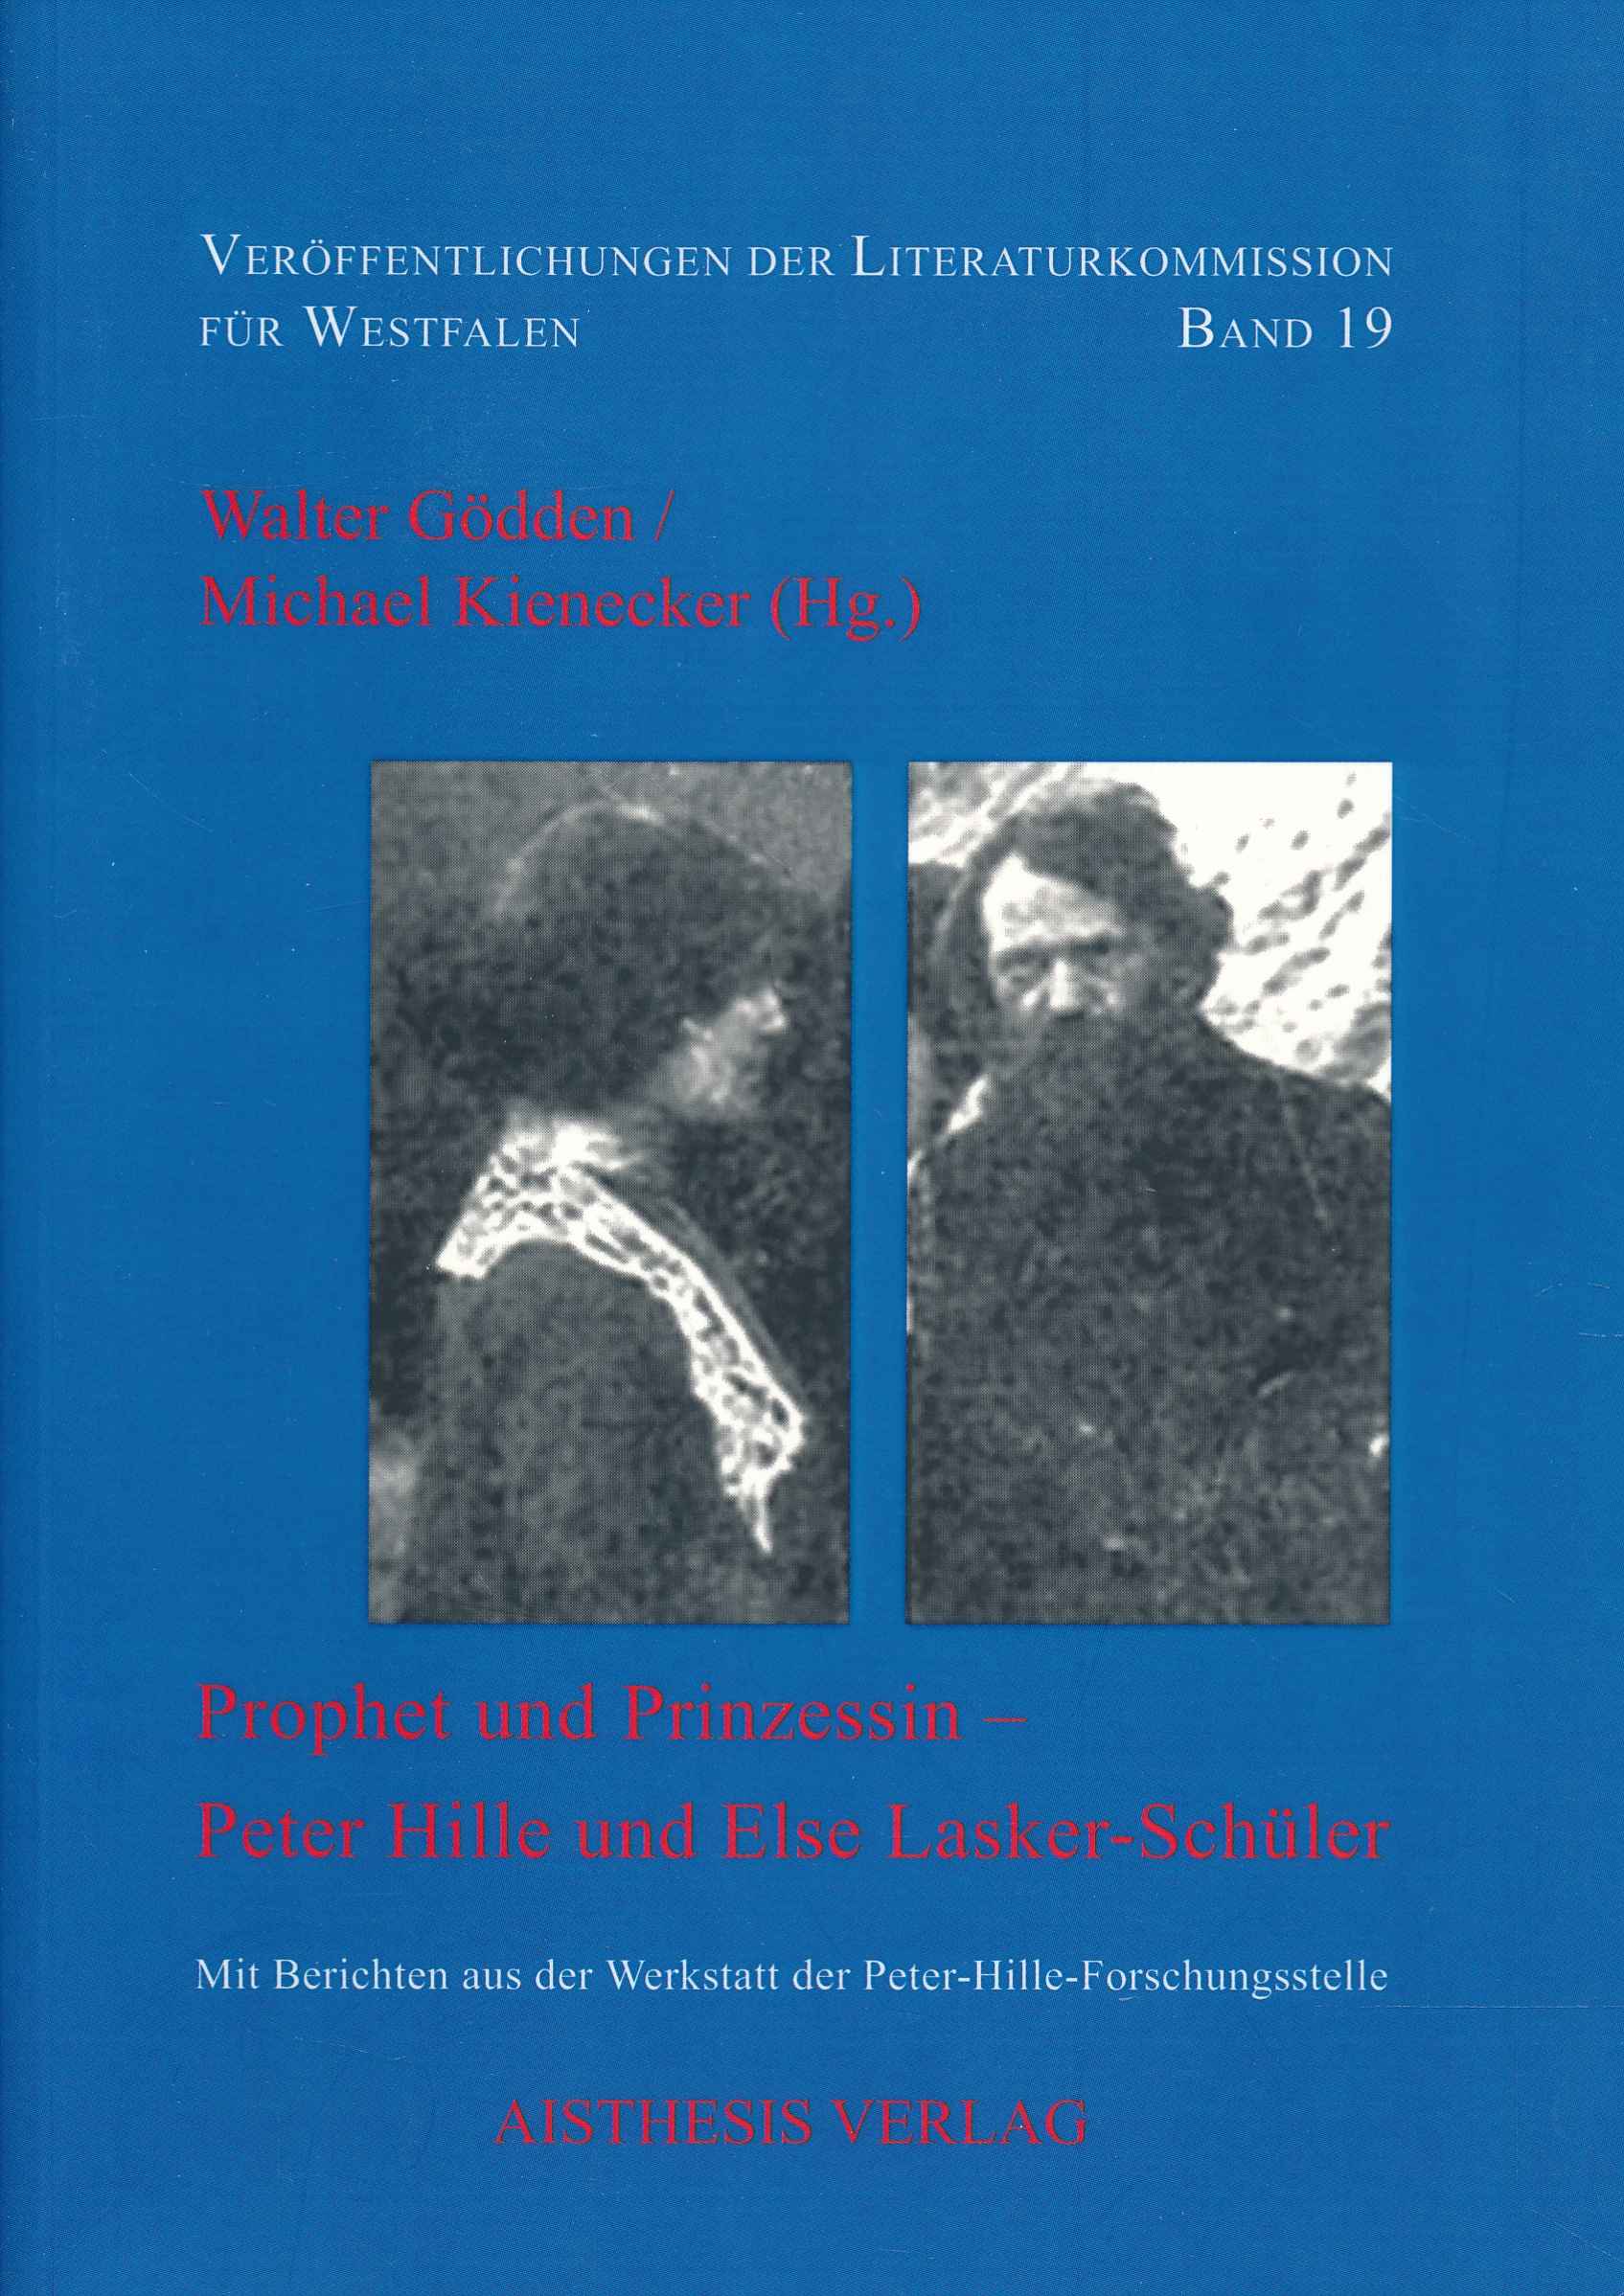 Prophet und Prinzessin - Peter Hille und Else Lasker-Schüler.(Veröffentlichungen der Literaturkommission für Westfalen, Band 19). - Gödden, Walter; Kienecker, Michael (Hrsg.)